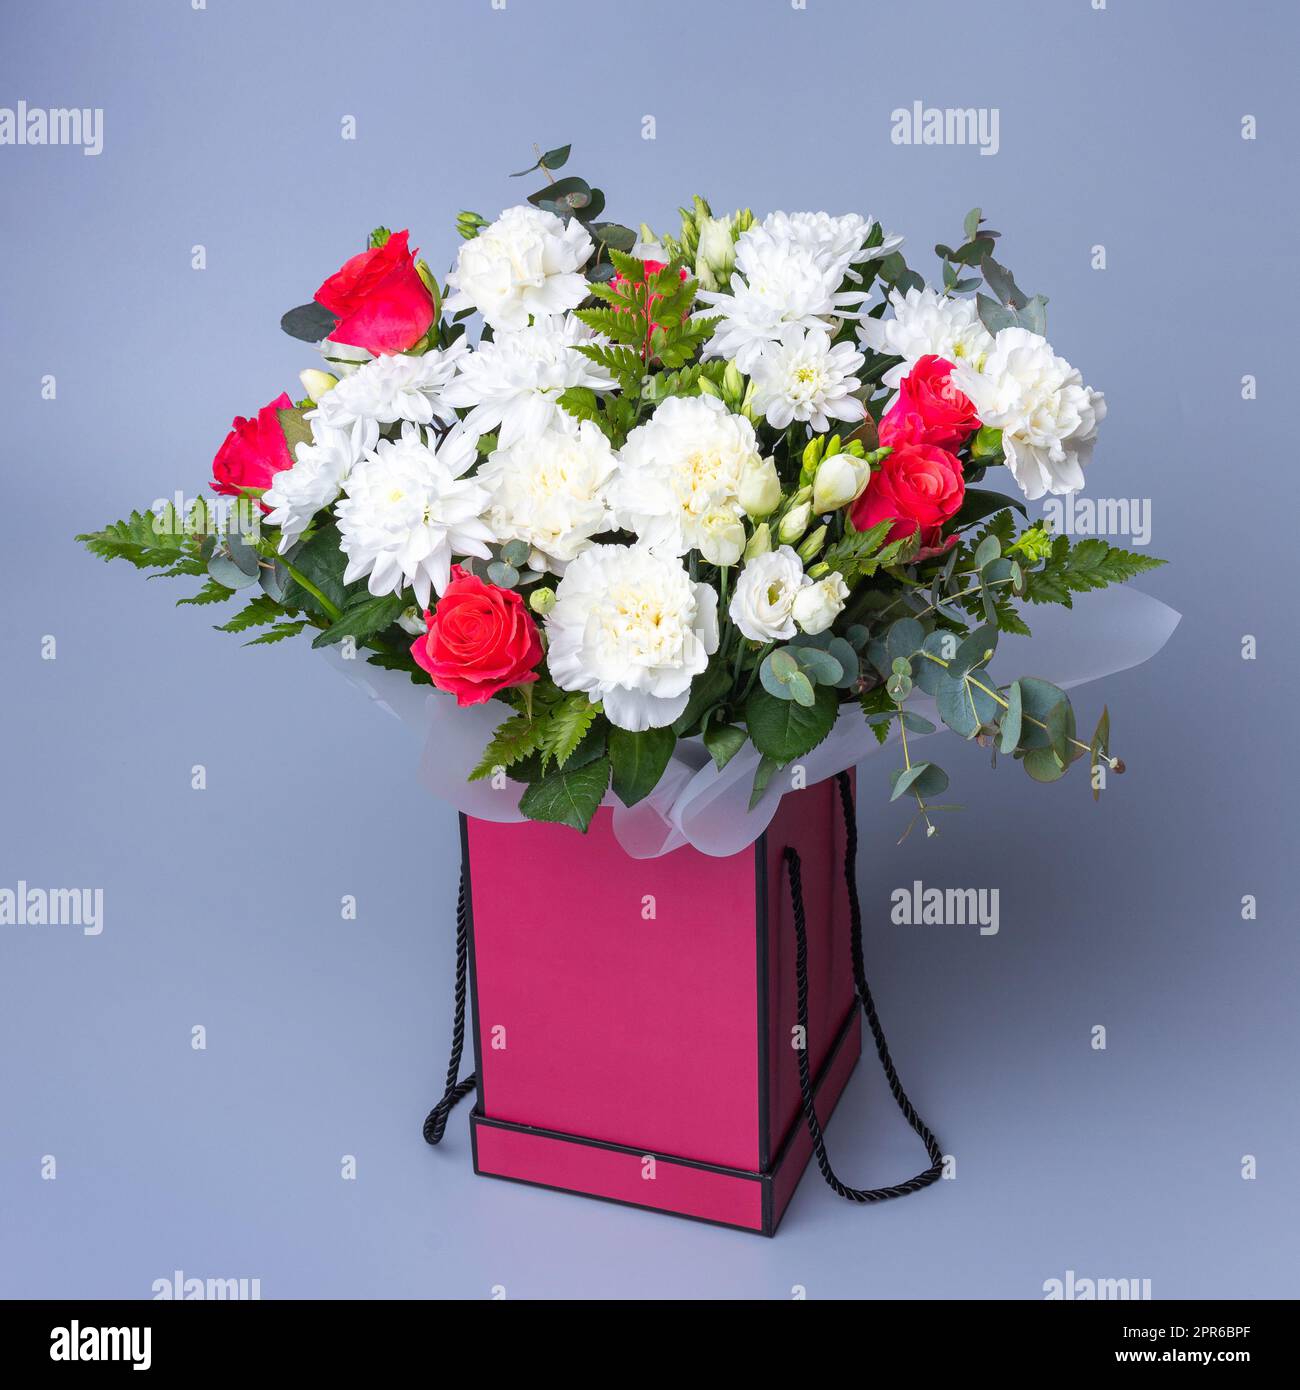 Wunderschöner Blumenstrauß in einer pinkfarbenen Geschenkbox auf blauem Hintergrund. Stockfoto